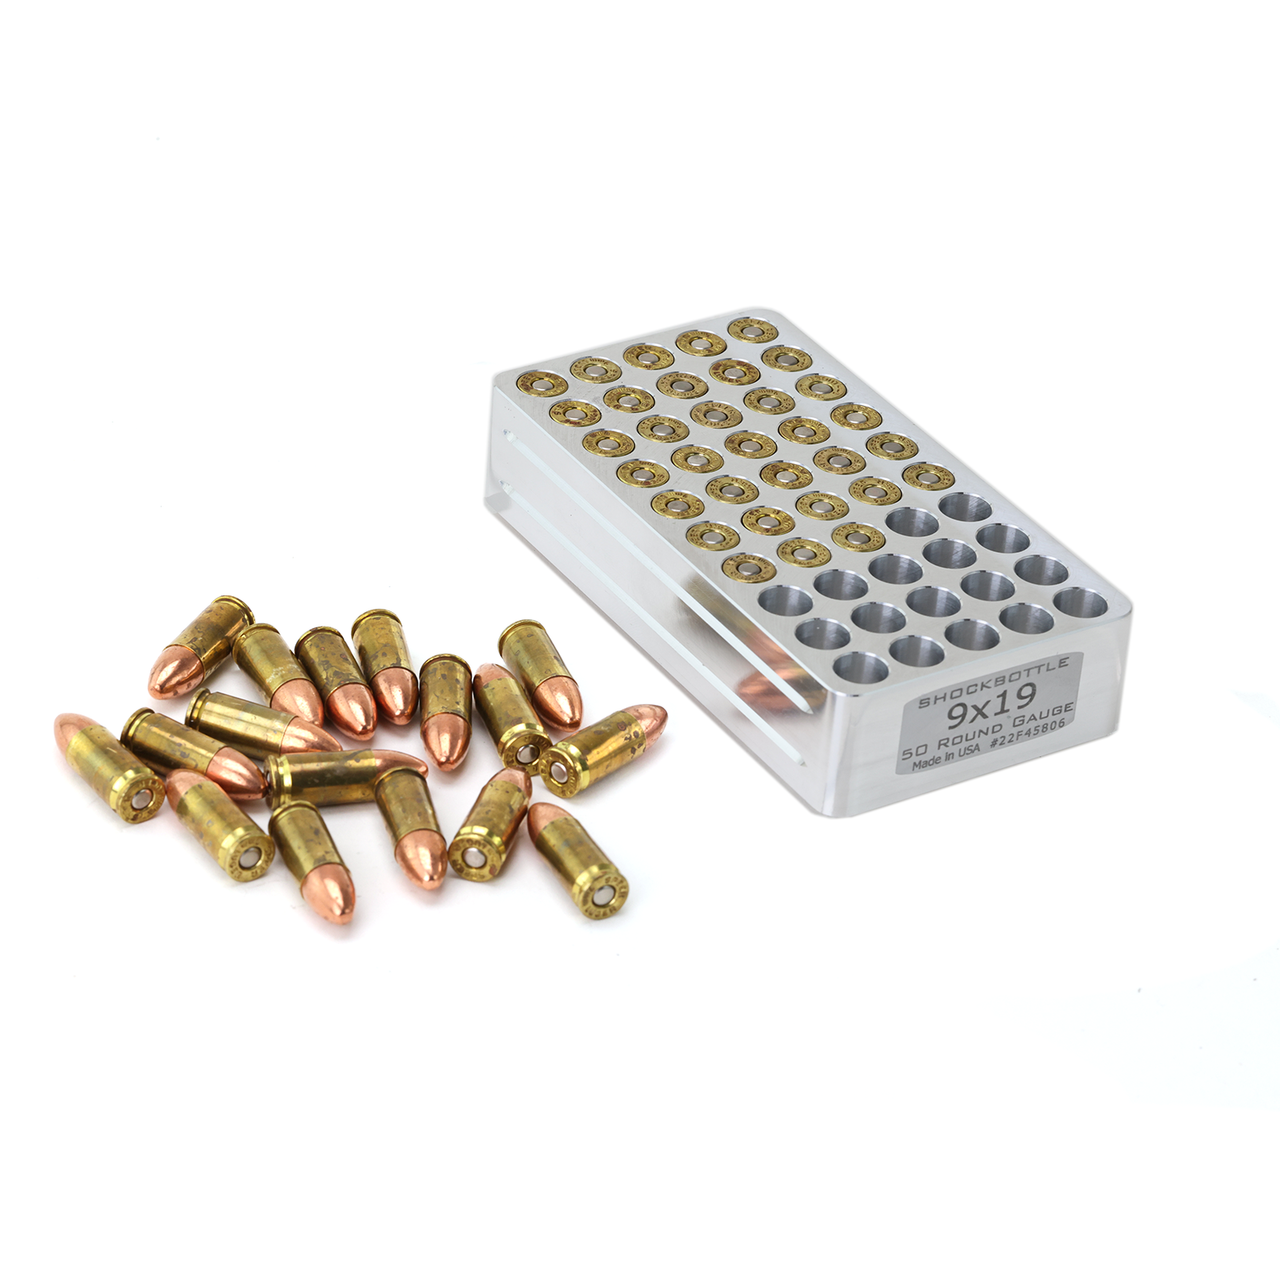 Floor Shooting Range Casings Fired Cartridges Various Calibers